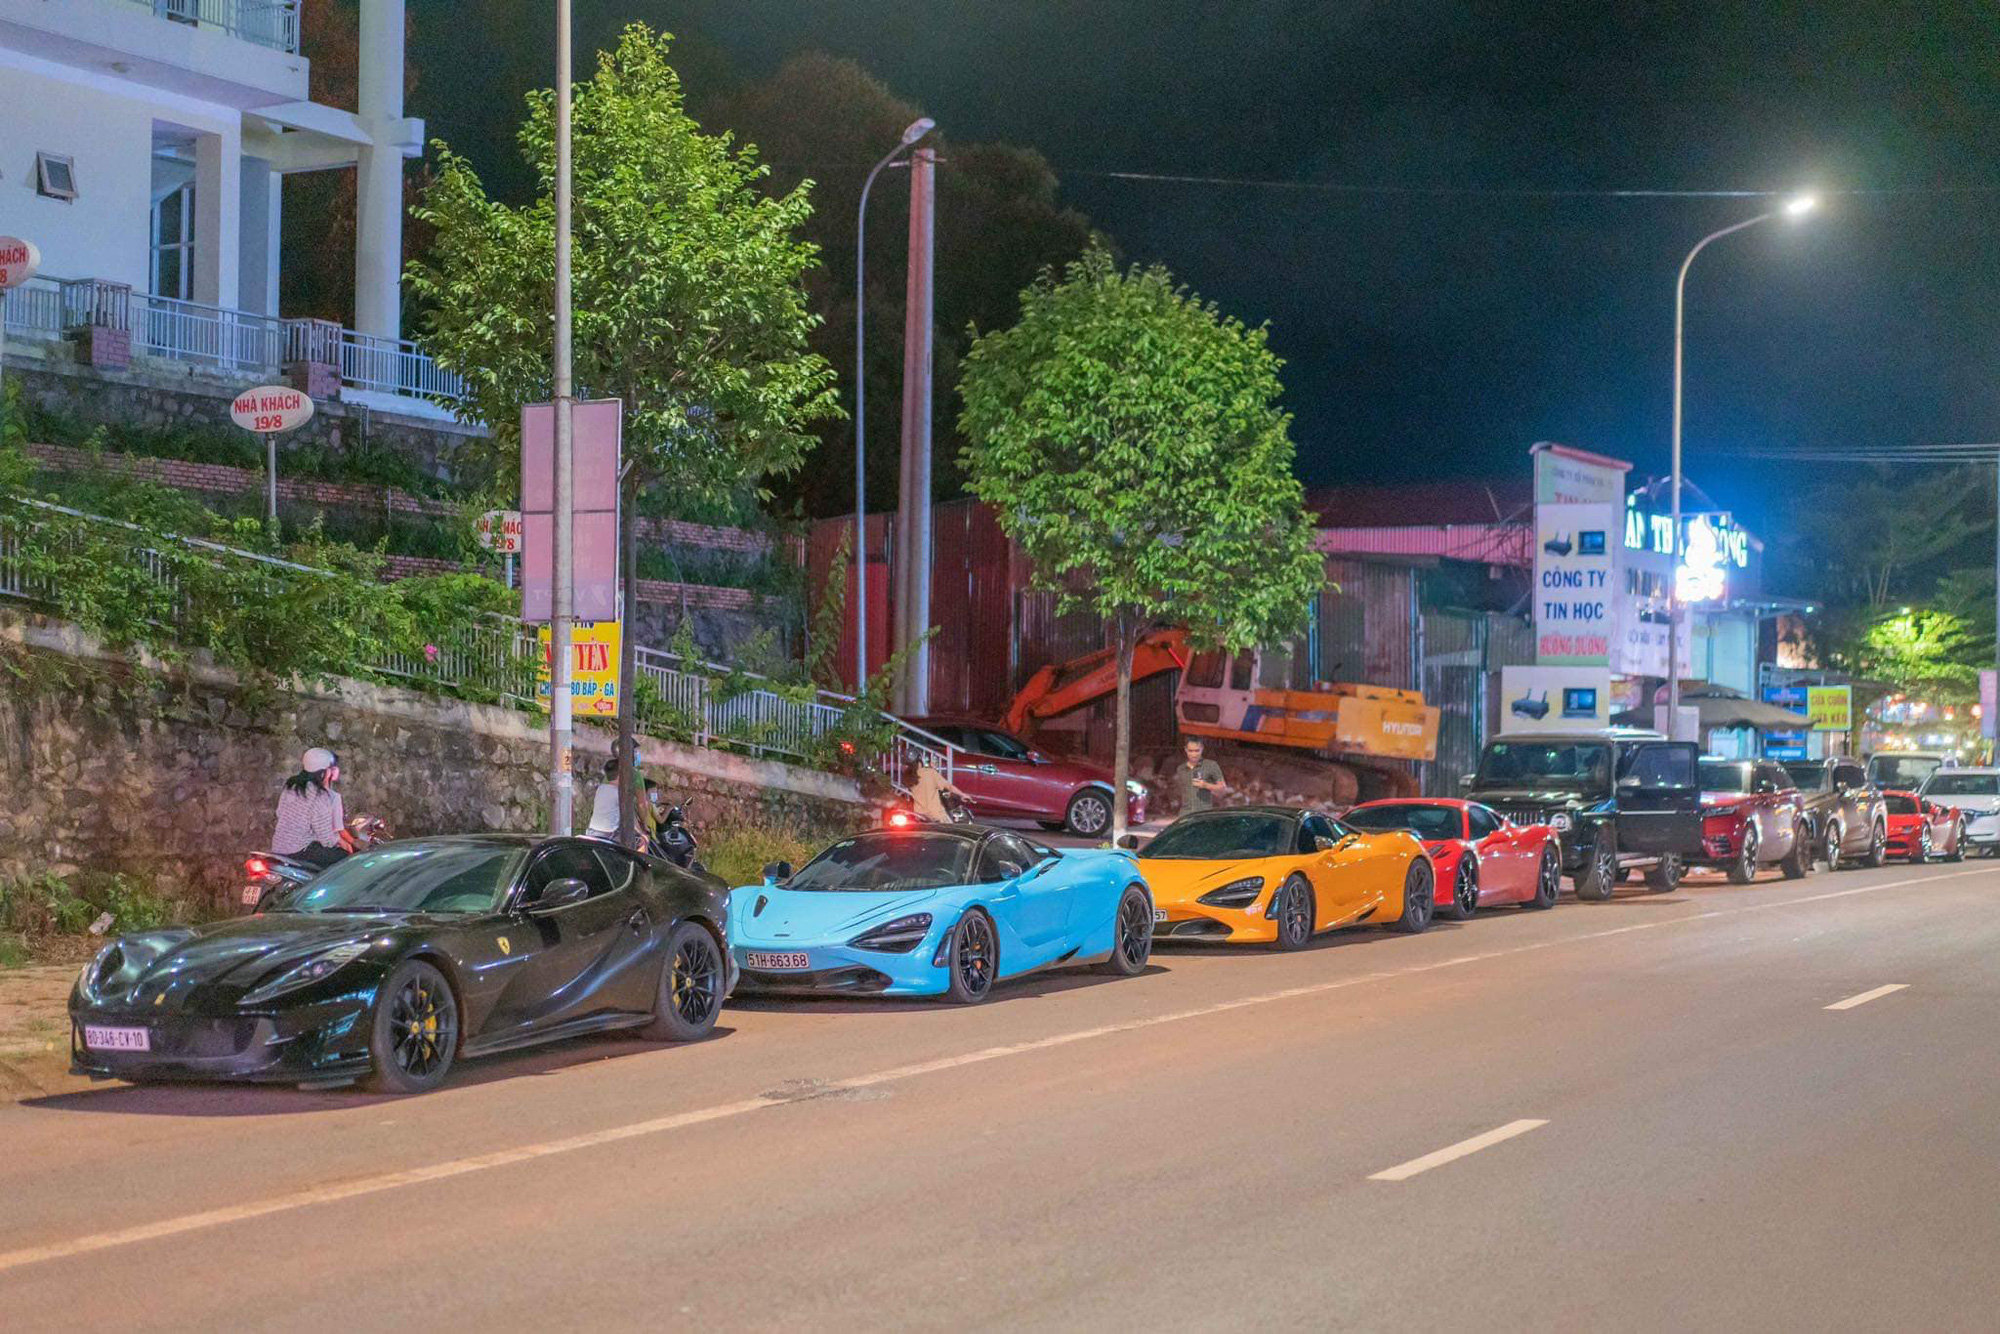 Dàn siêu xe của giới đại gia Sài Gòn bất ngờ xuất hiện tại Đắk Nông - Ảnh 1.